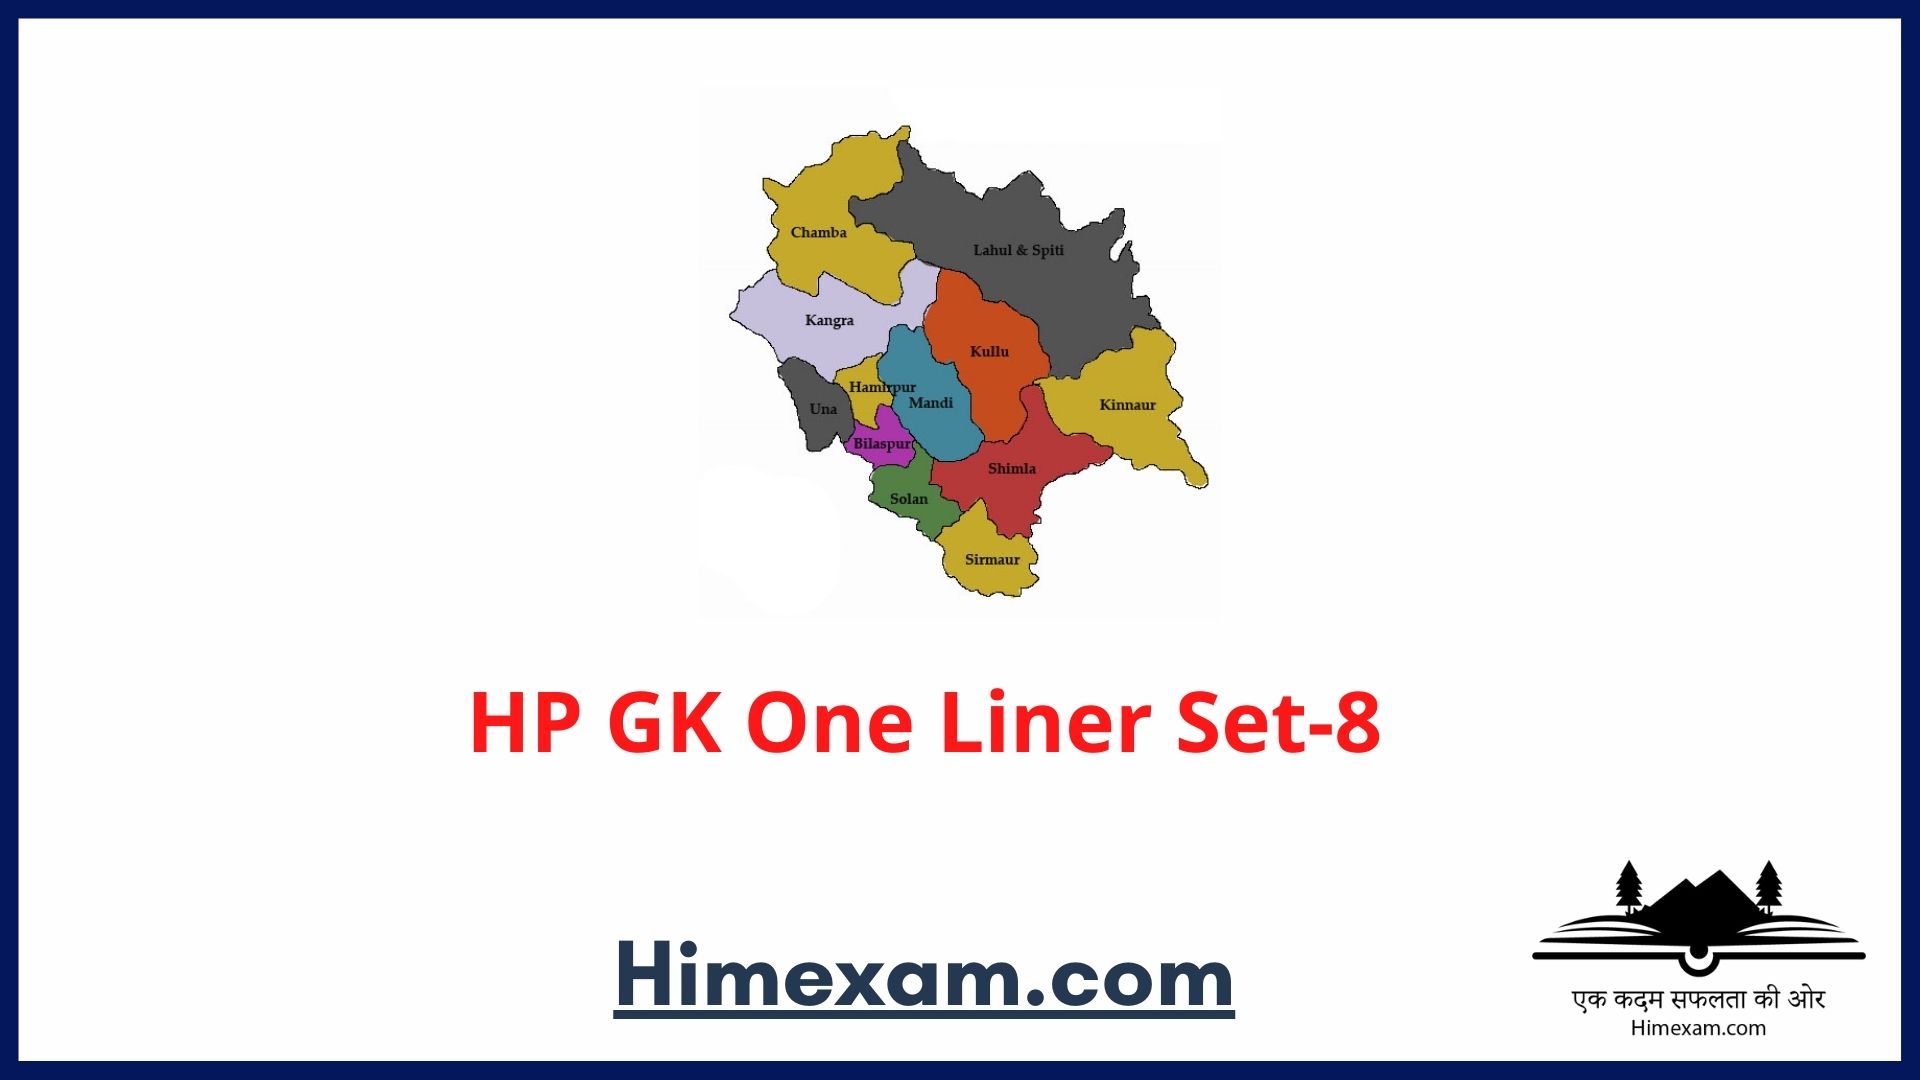 HP GK One Liner Set-8